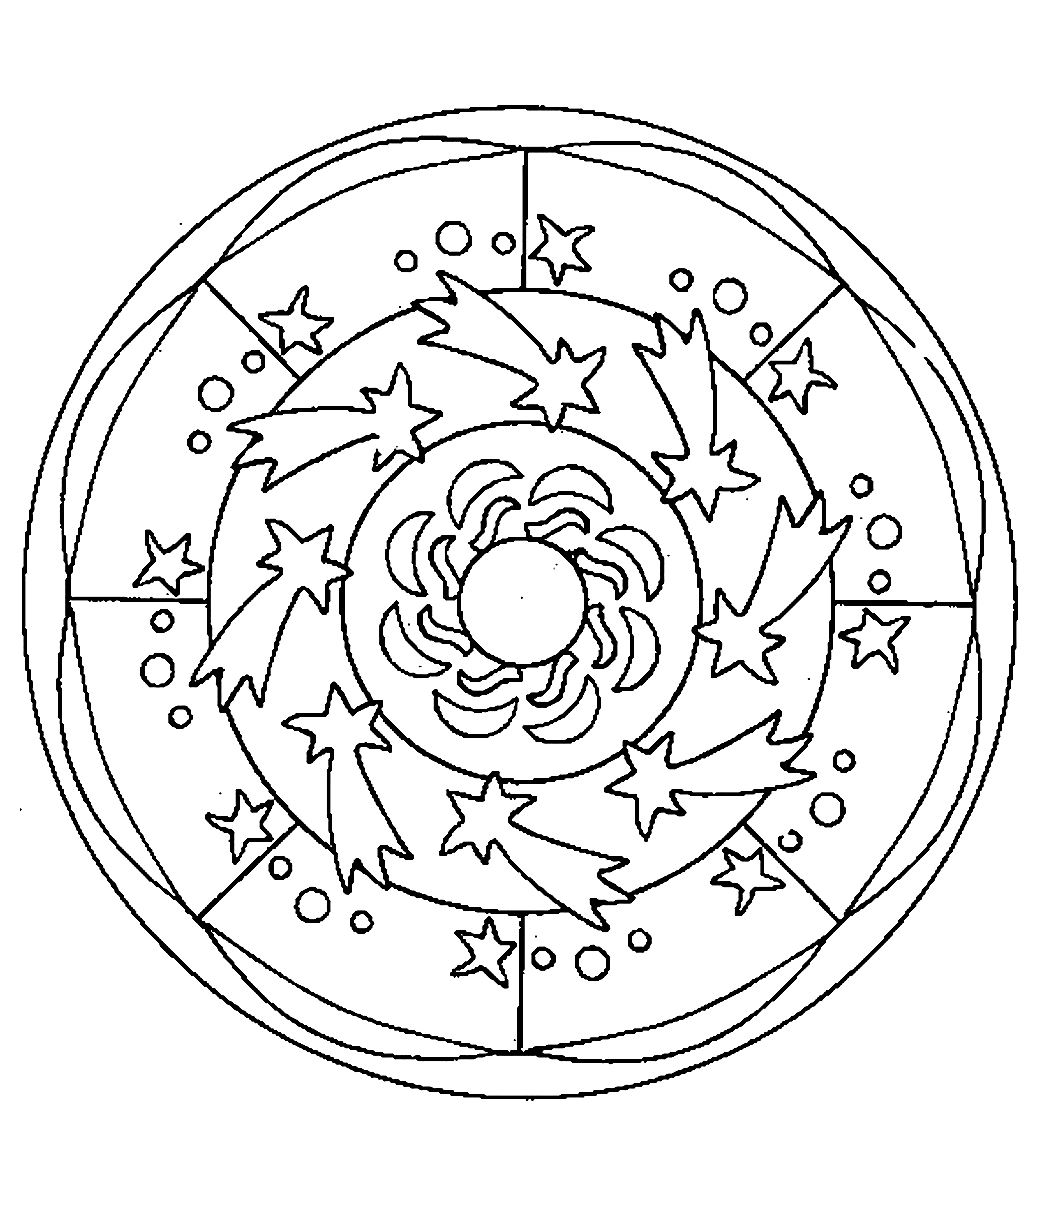 Mandala da colorare in stile 'spaziale' con bellissime stelle sparse intorno al cerchio. Facile da colorare.